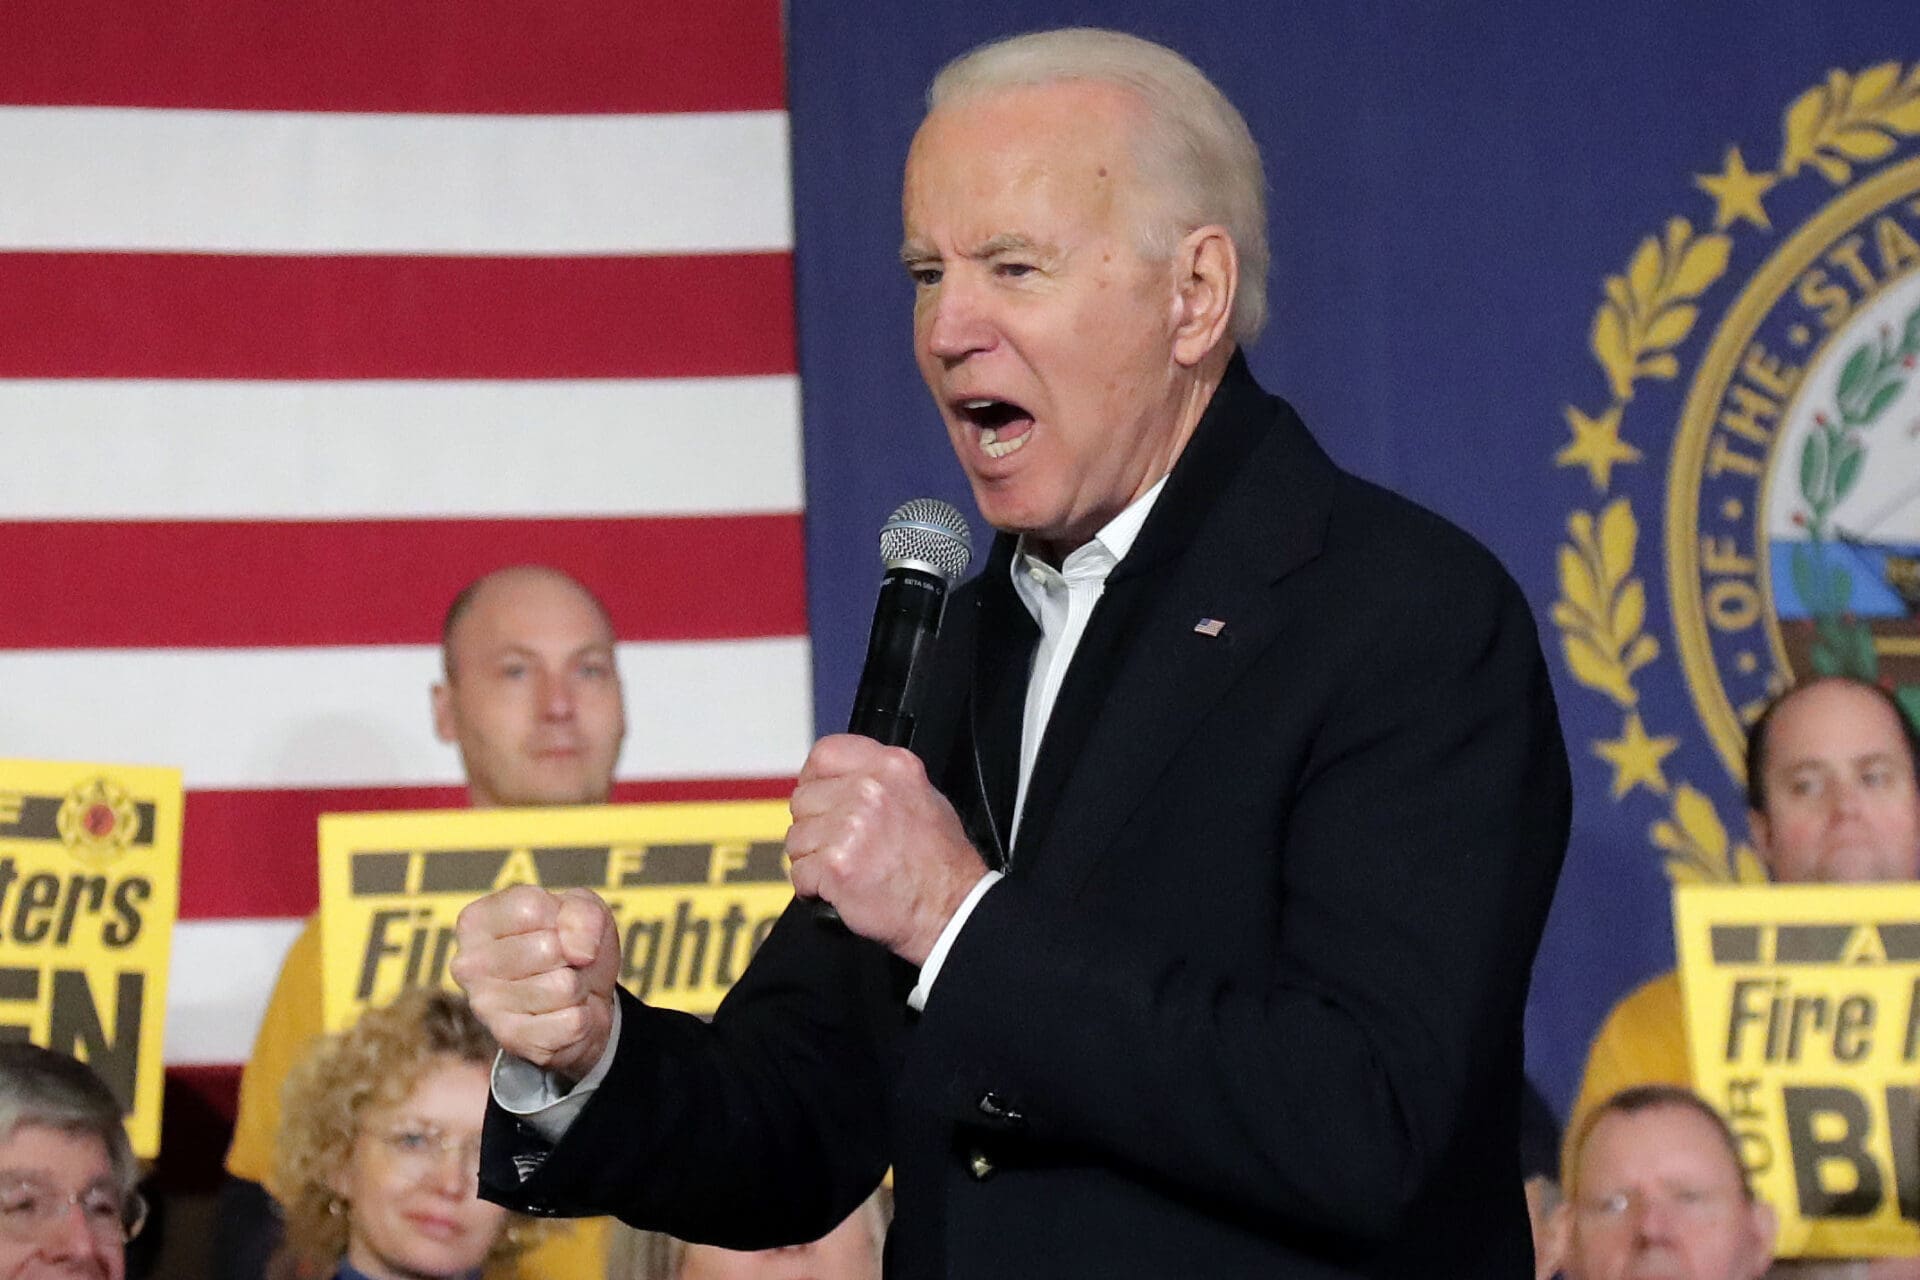 Joe Biden fist fight punch